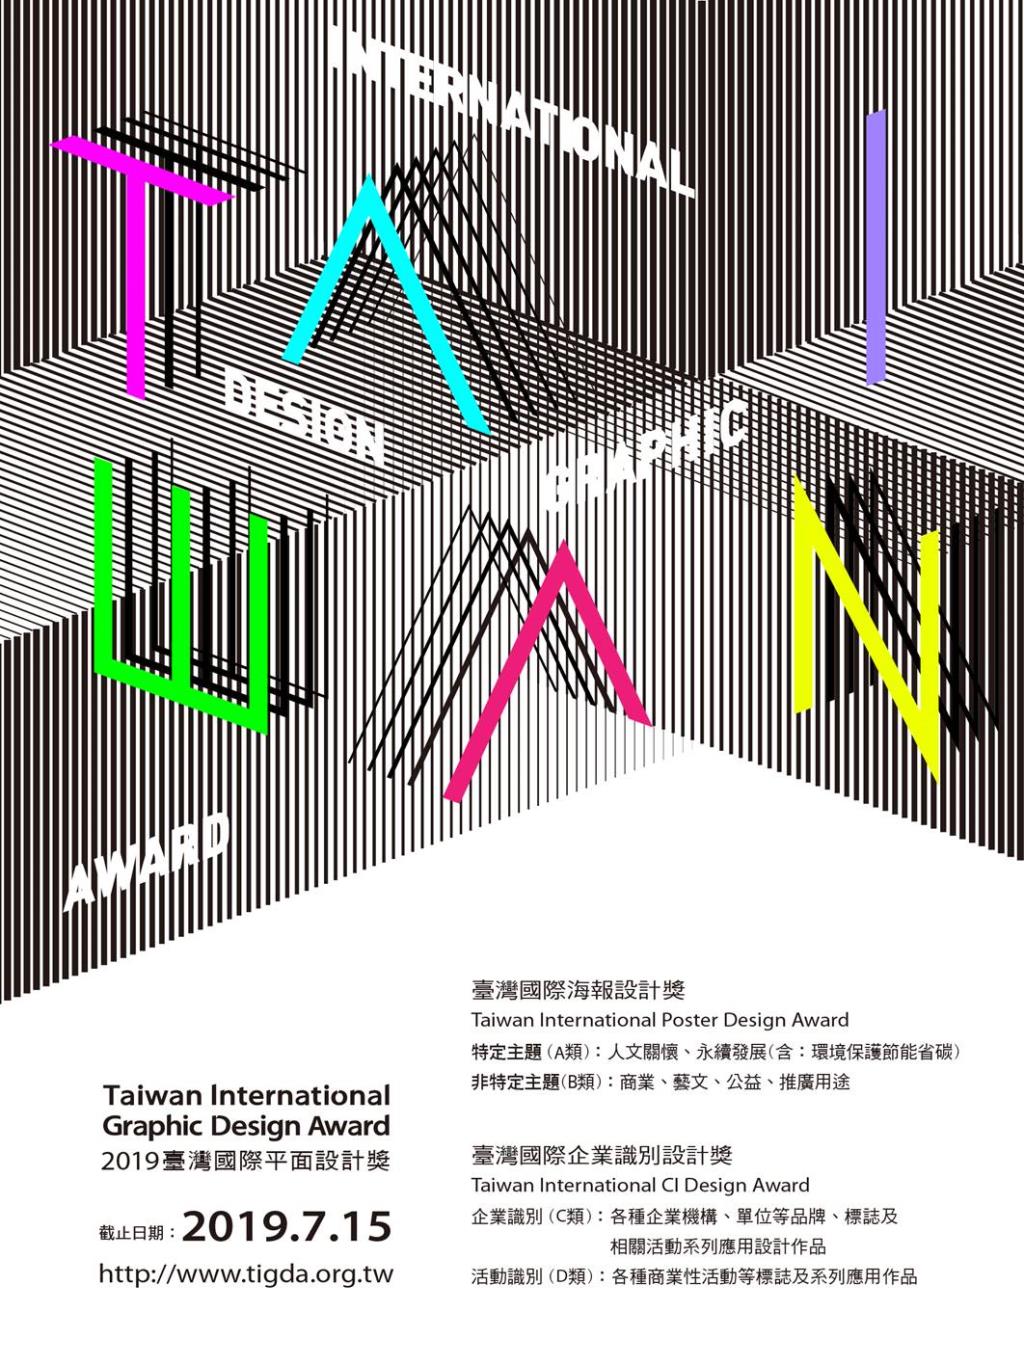 2019 TiGDA 臺灣國際平面設計競賽，開放報名至7/15止，熱烈徵件中！